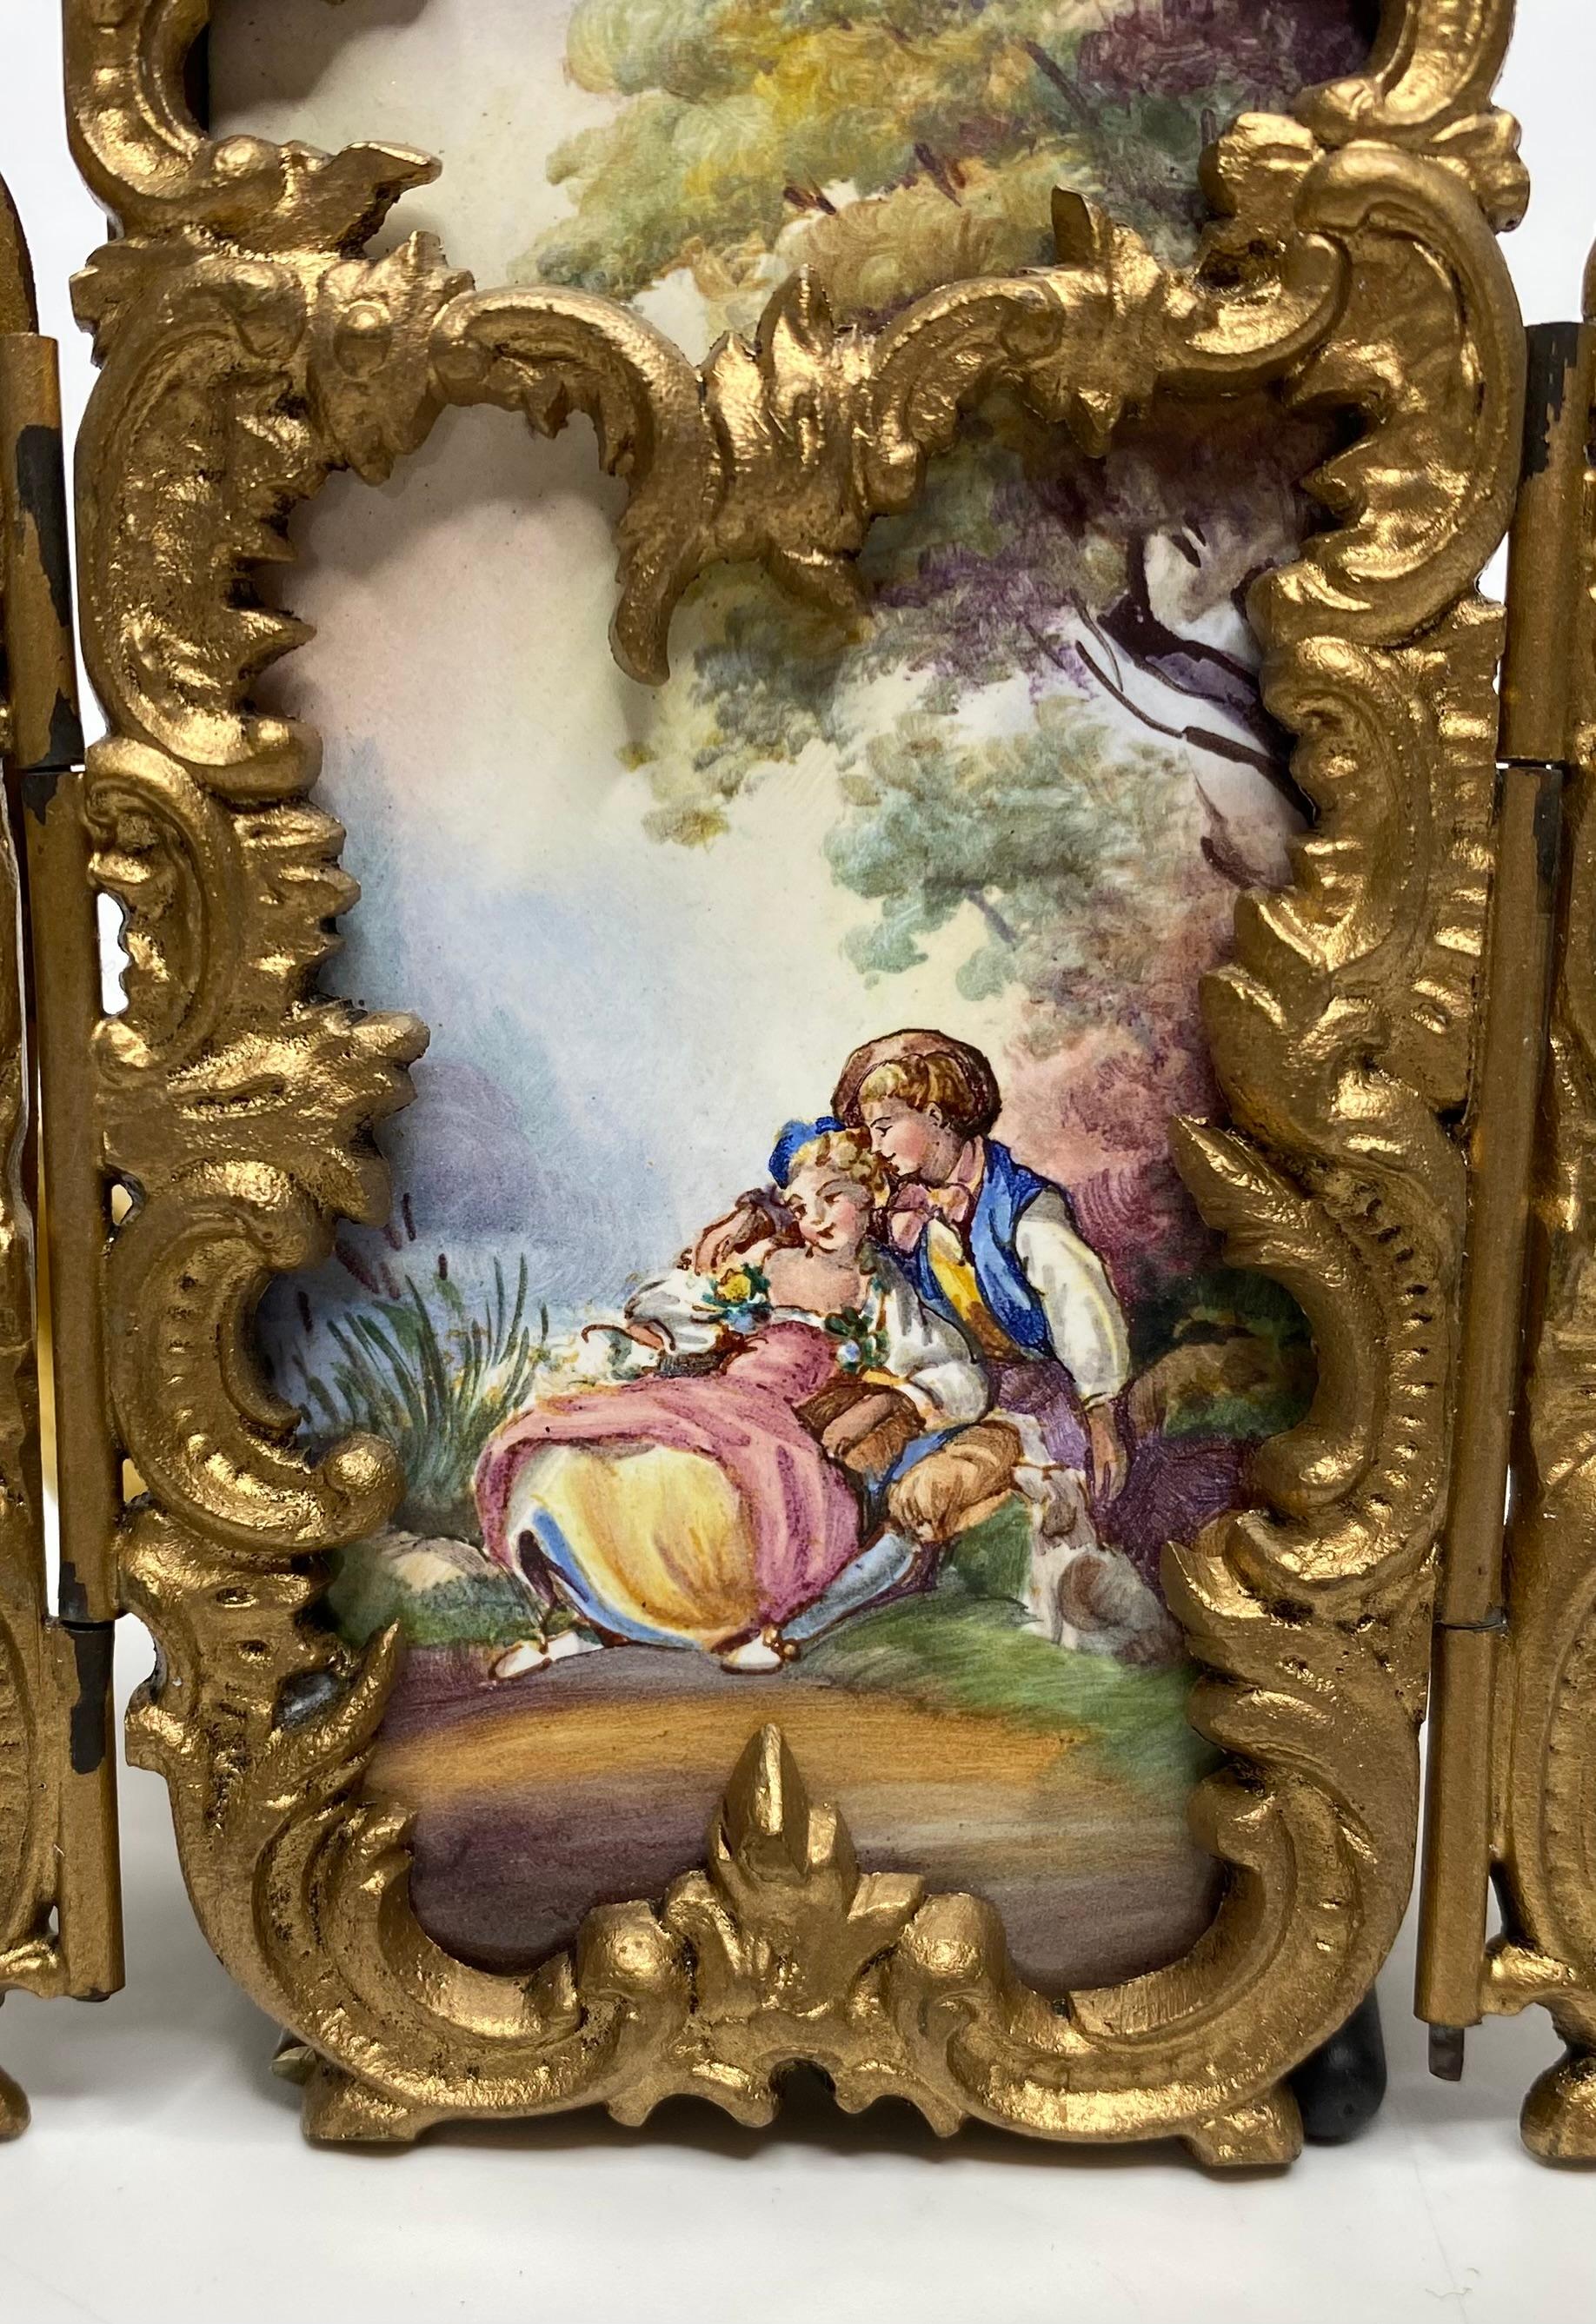 Paravent miniature en émail viennois, Autriche, c. 1900. Peint à la main avec des panneaux d'après François Boucher, représentant des couples de courtisans portant des costumes du XVIIIe siècle et assis dans un cadre rural idyllique.
Les panneaux